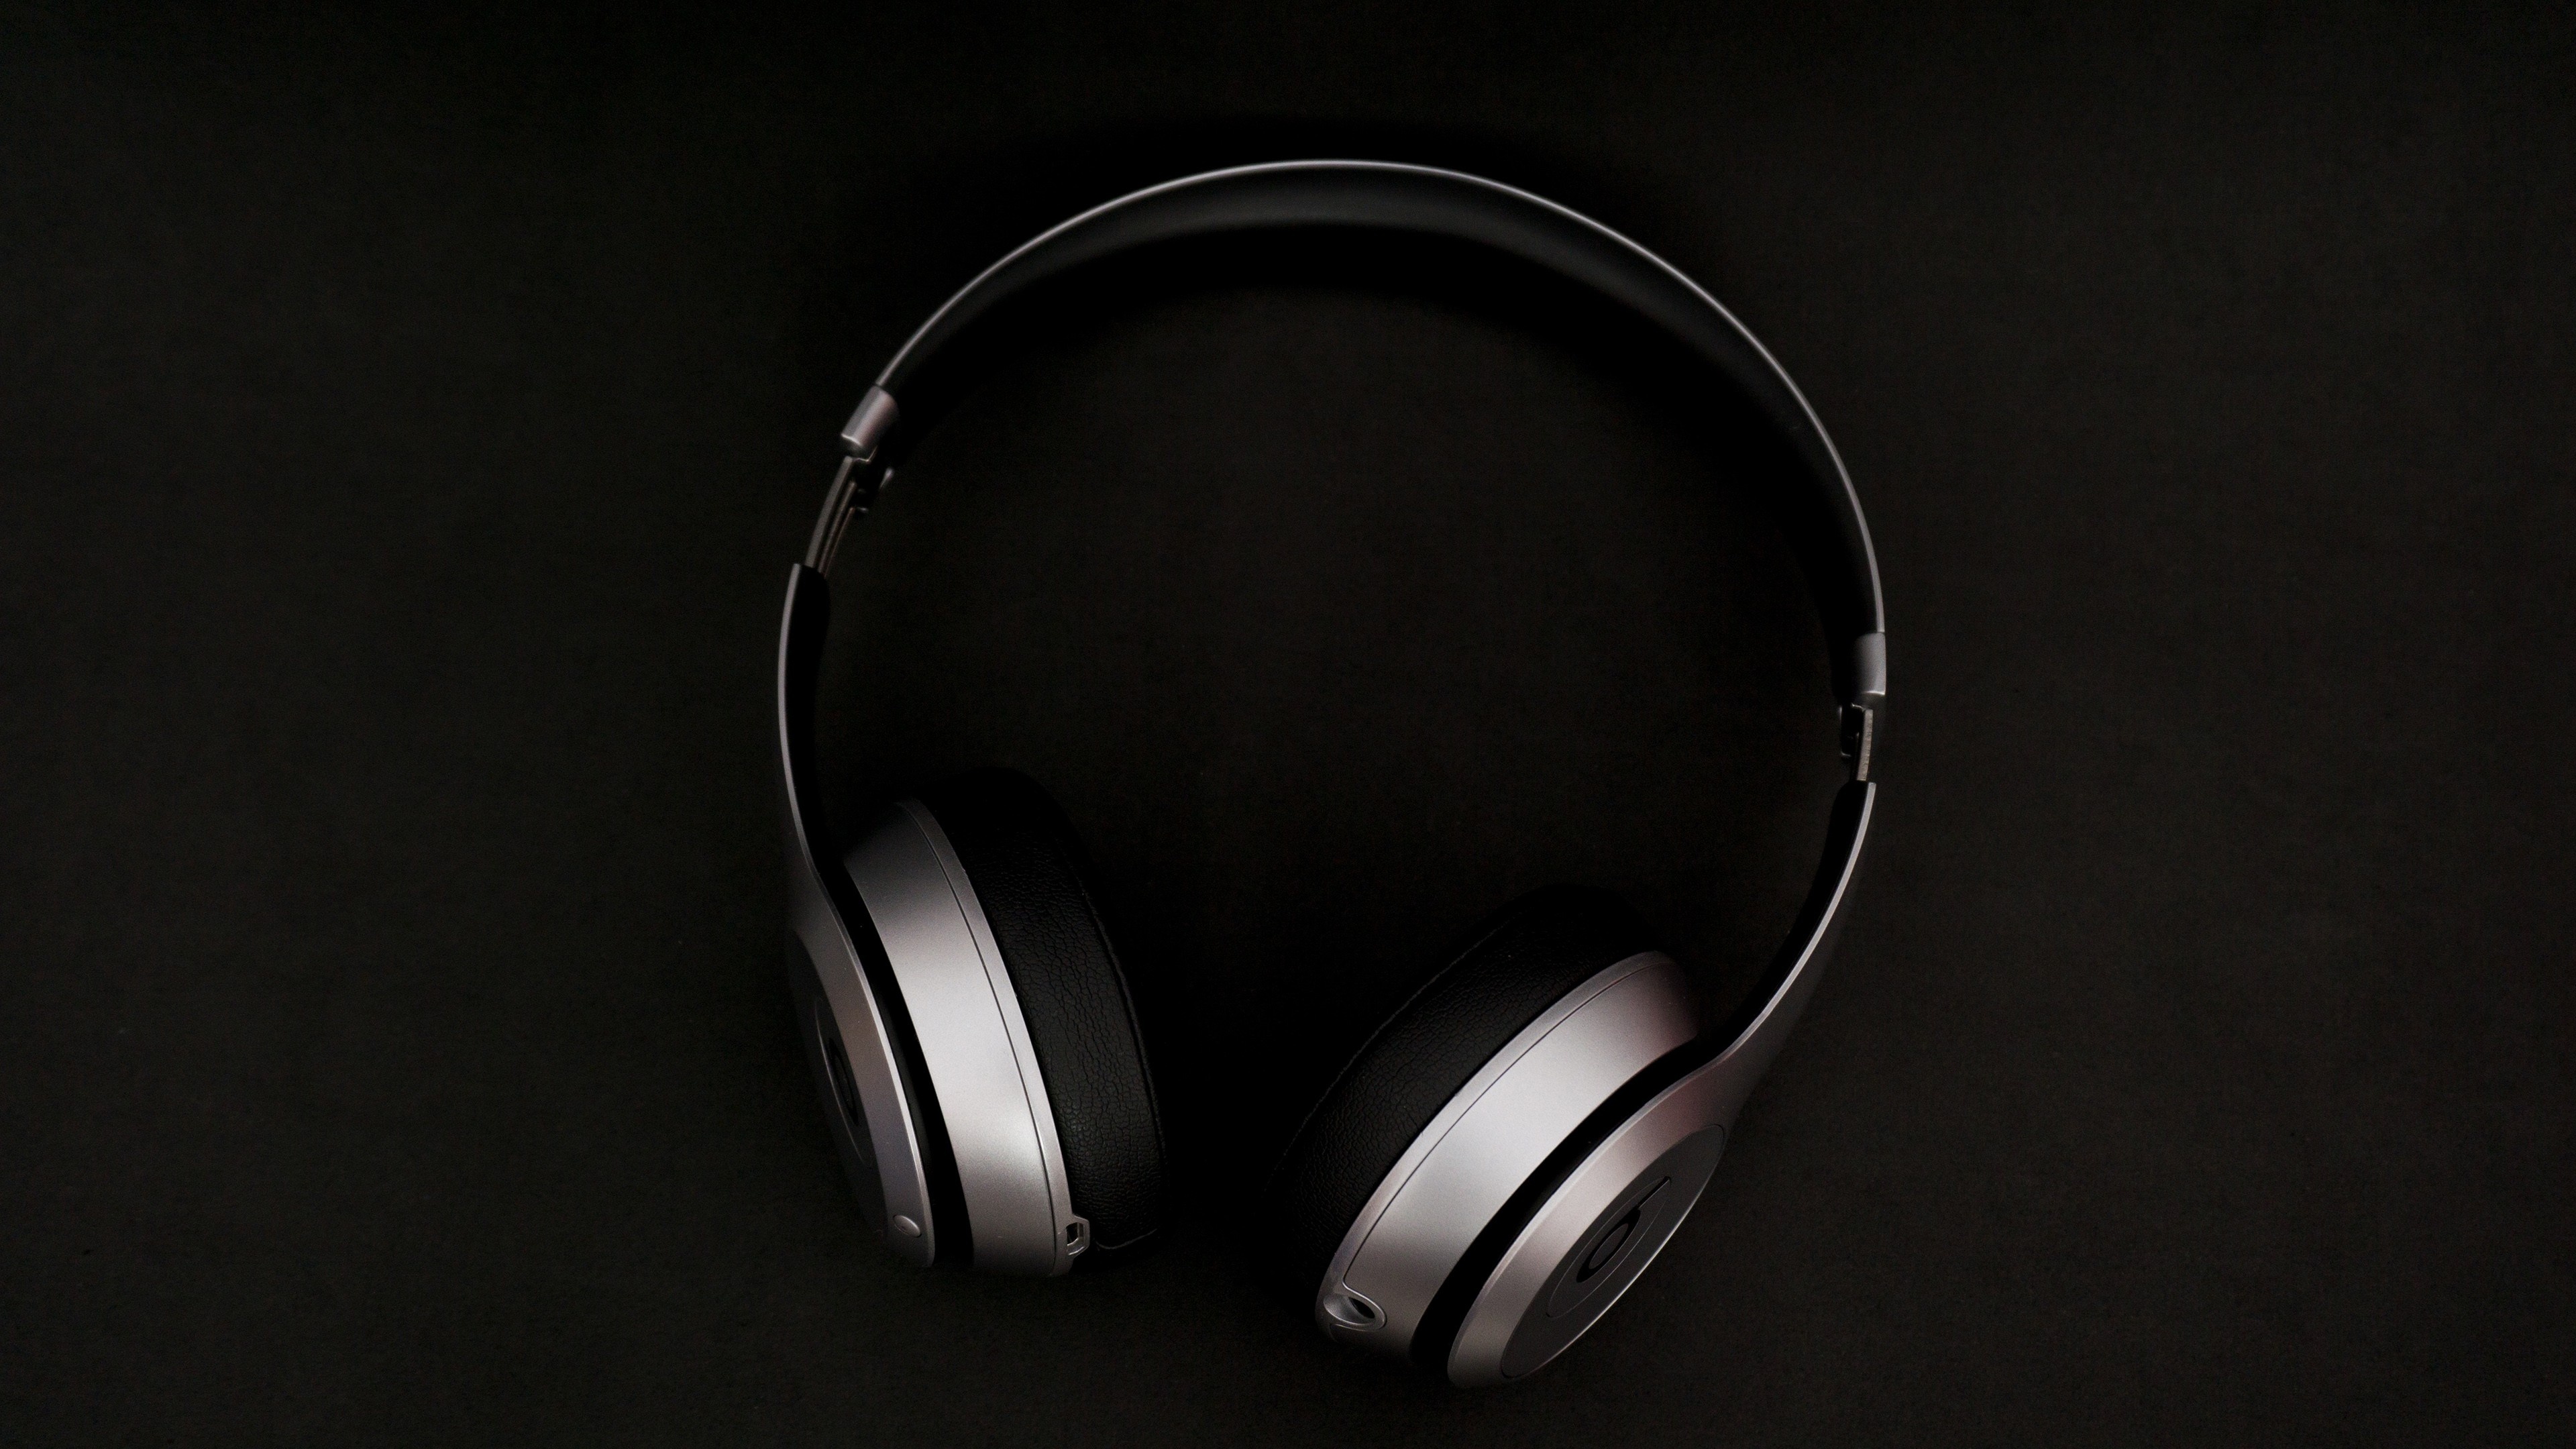 Beats headphones, Audio equipment photography, 3840x2160 4K Desktop